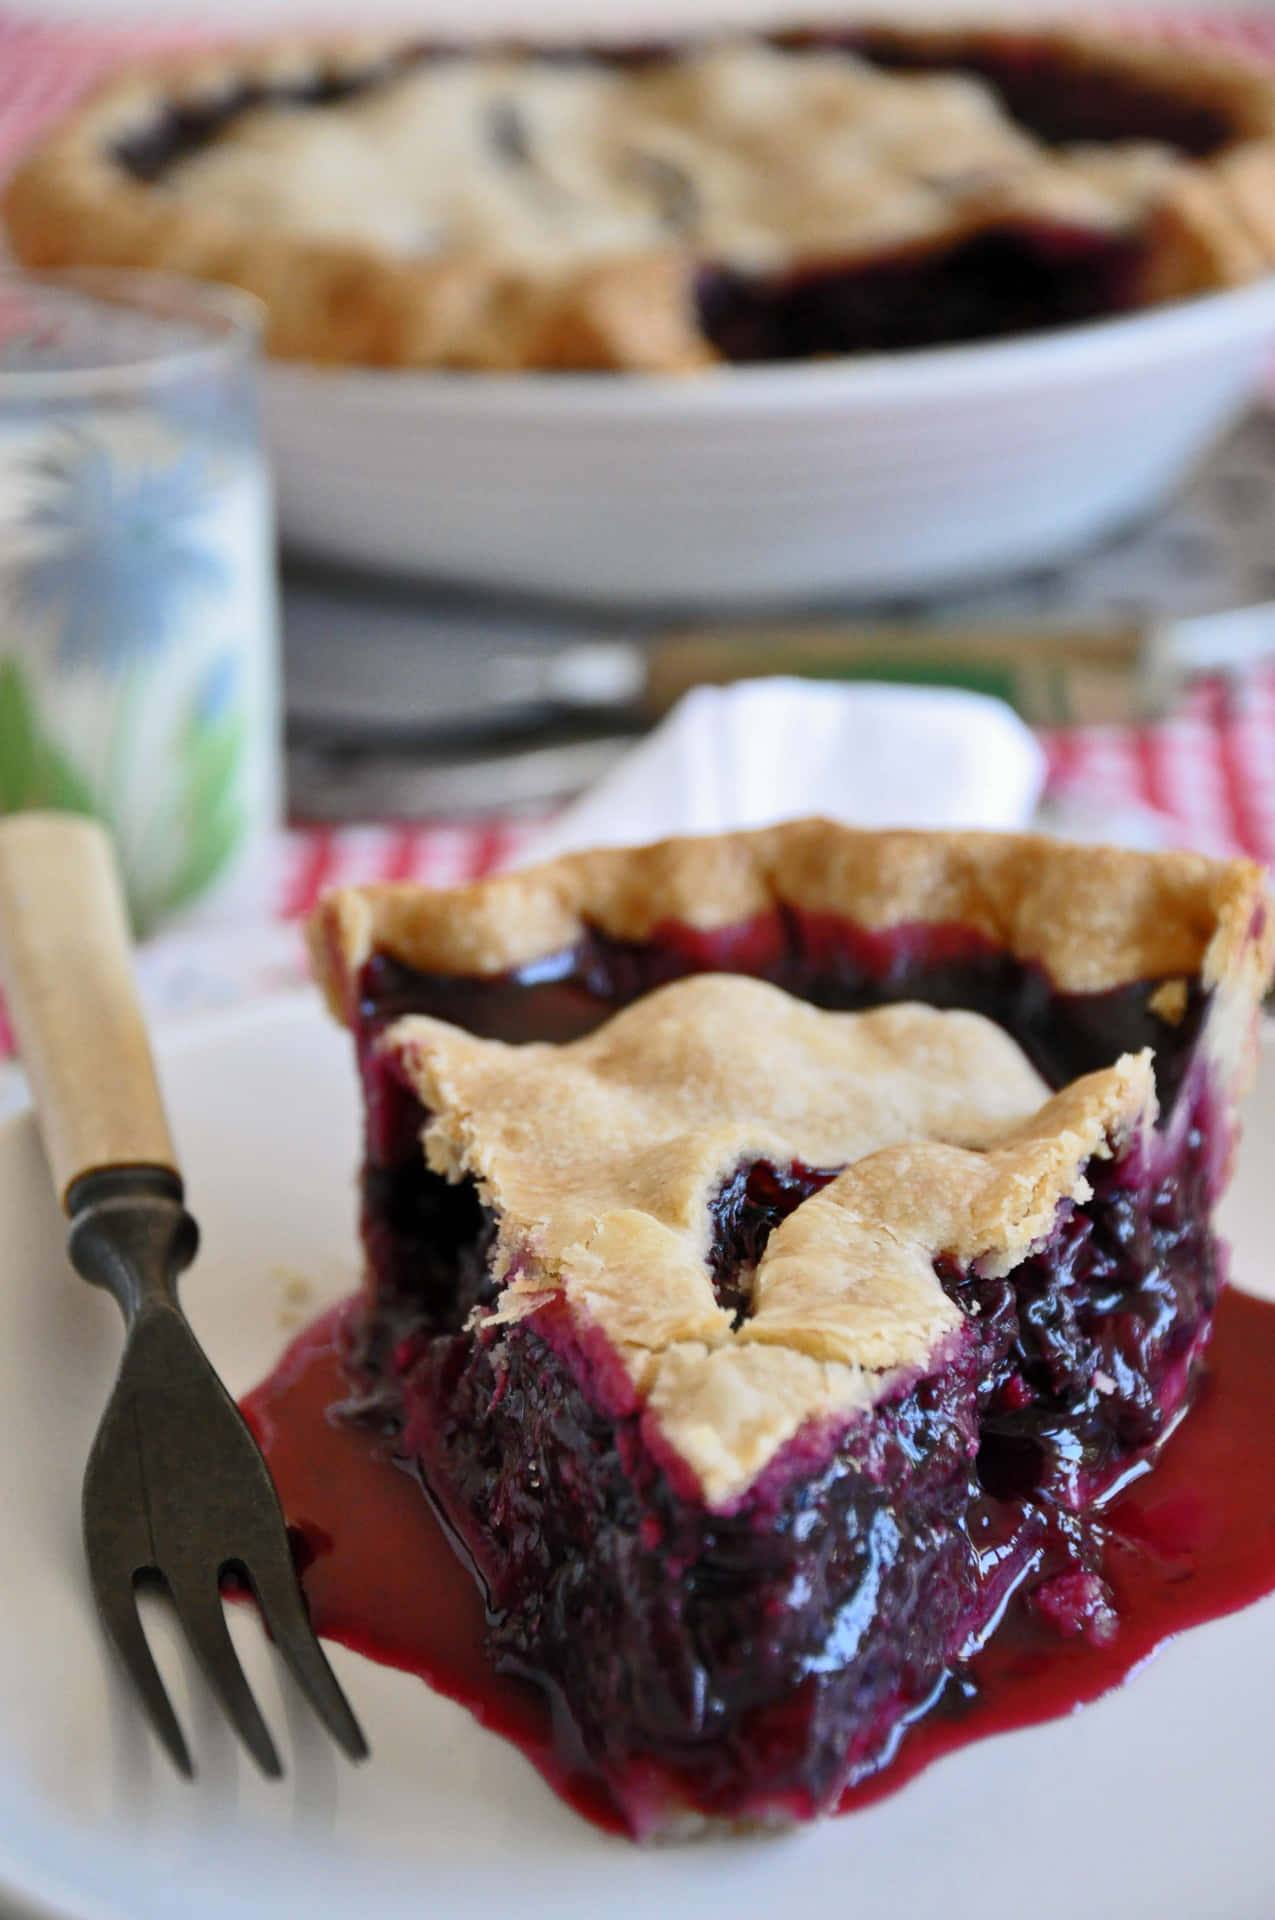 Enjoy a Sweet Slice of Blueberry Pie Wallpaper